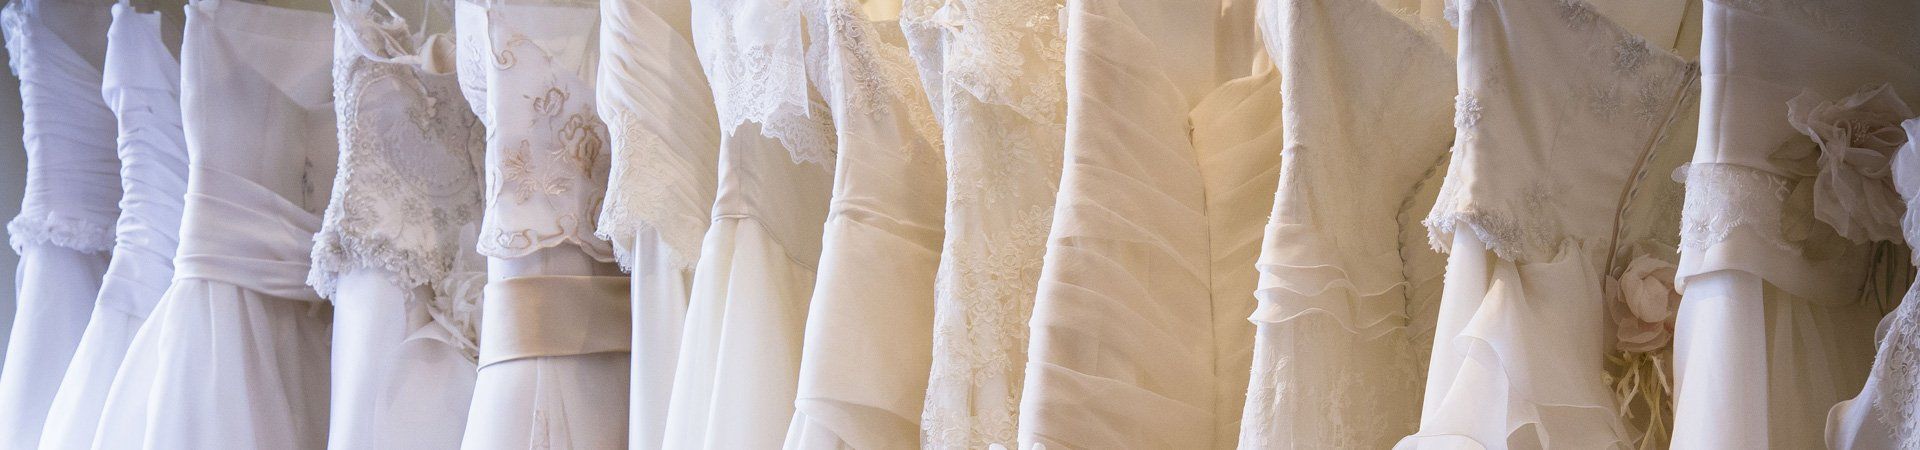 Bridal dress alteration